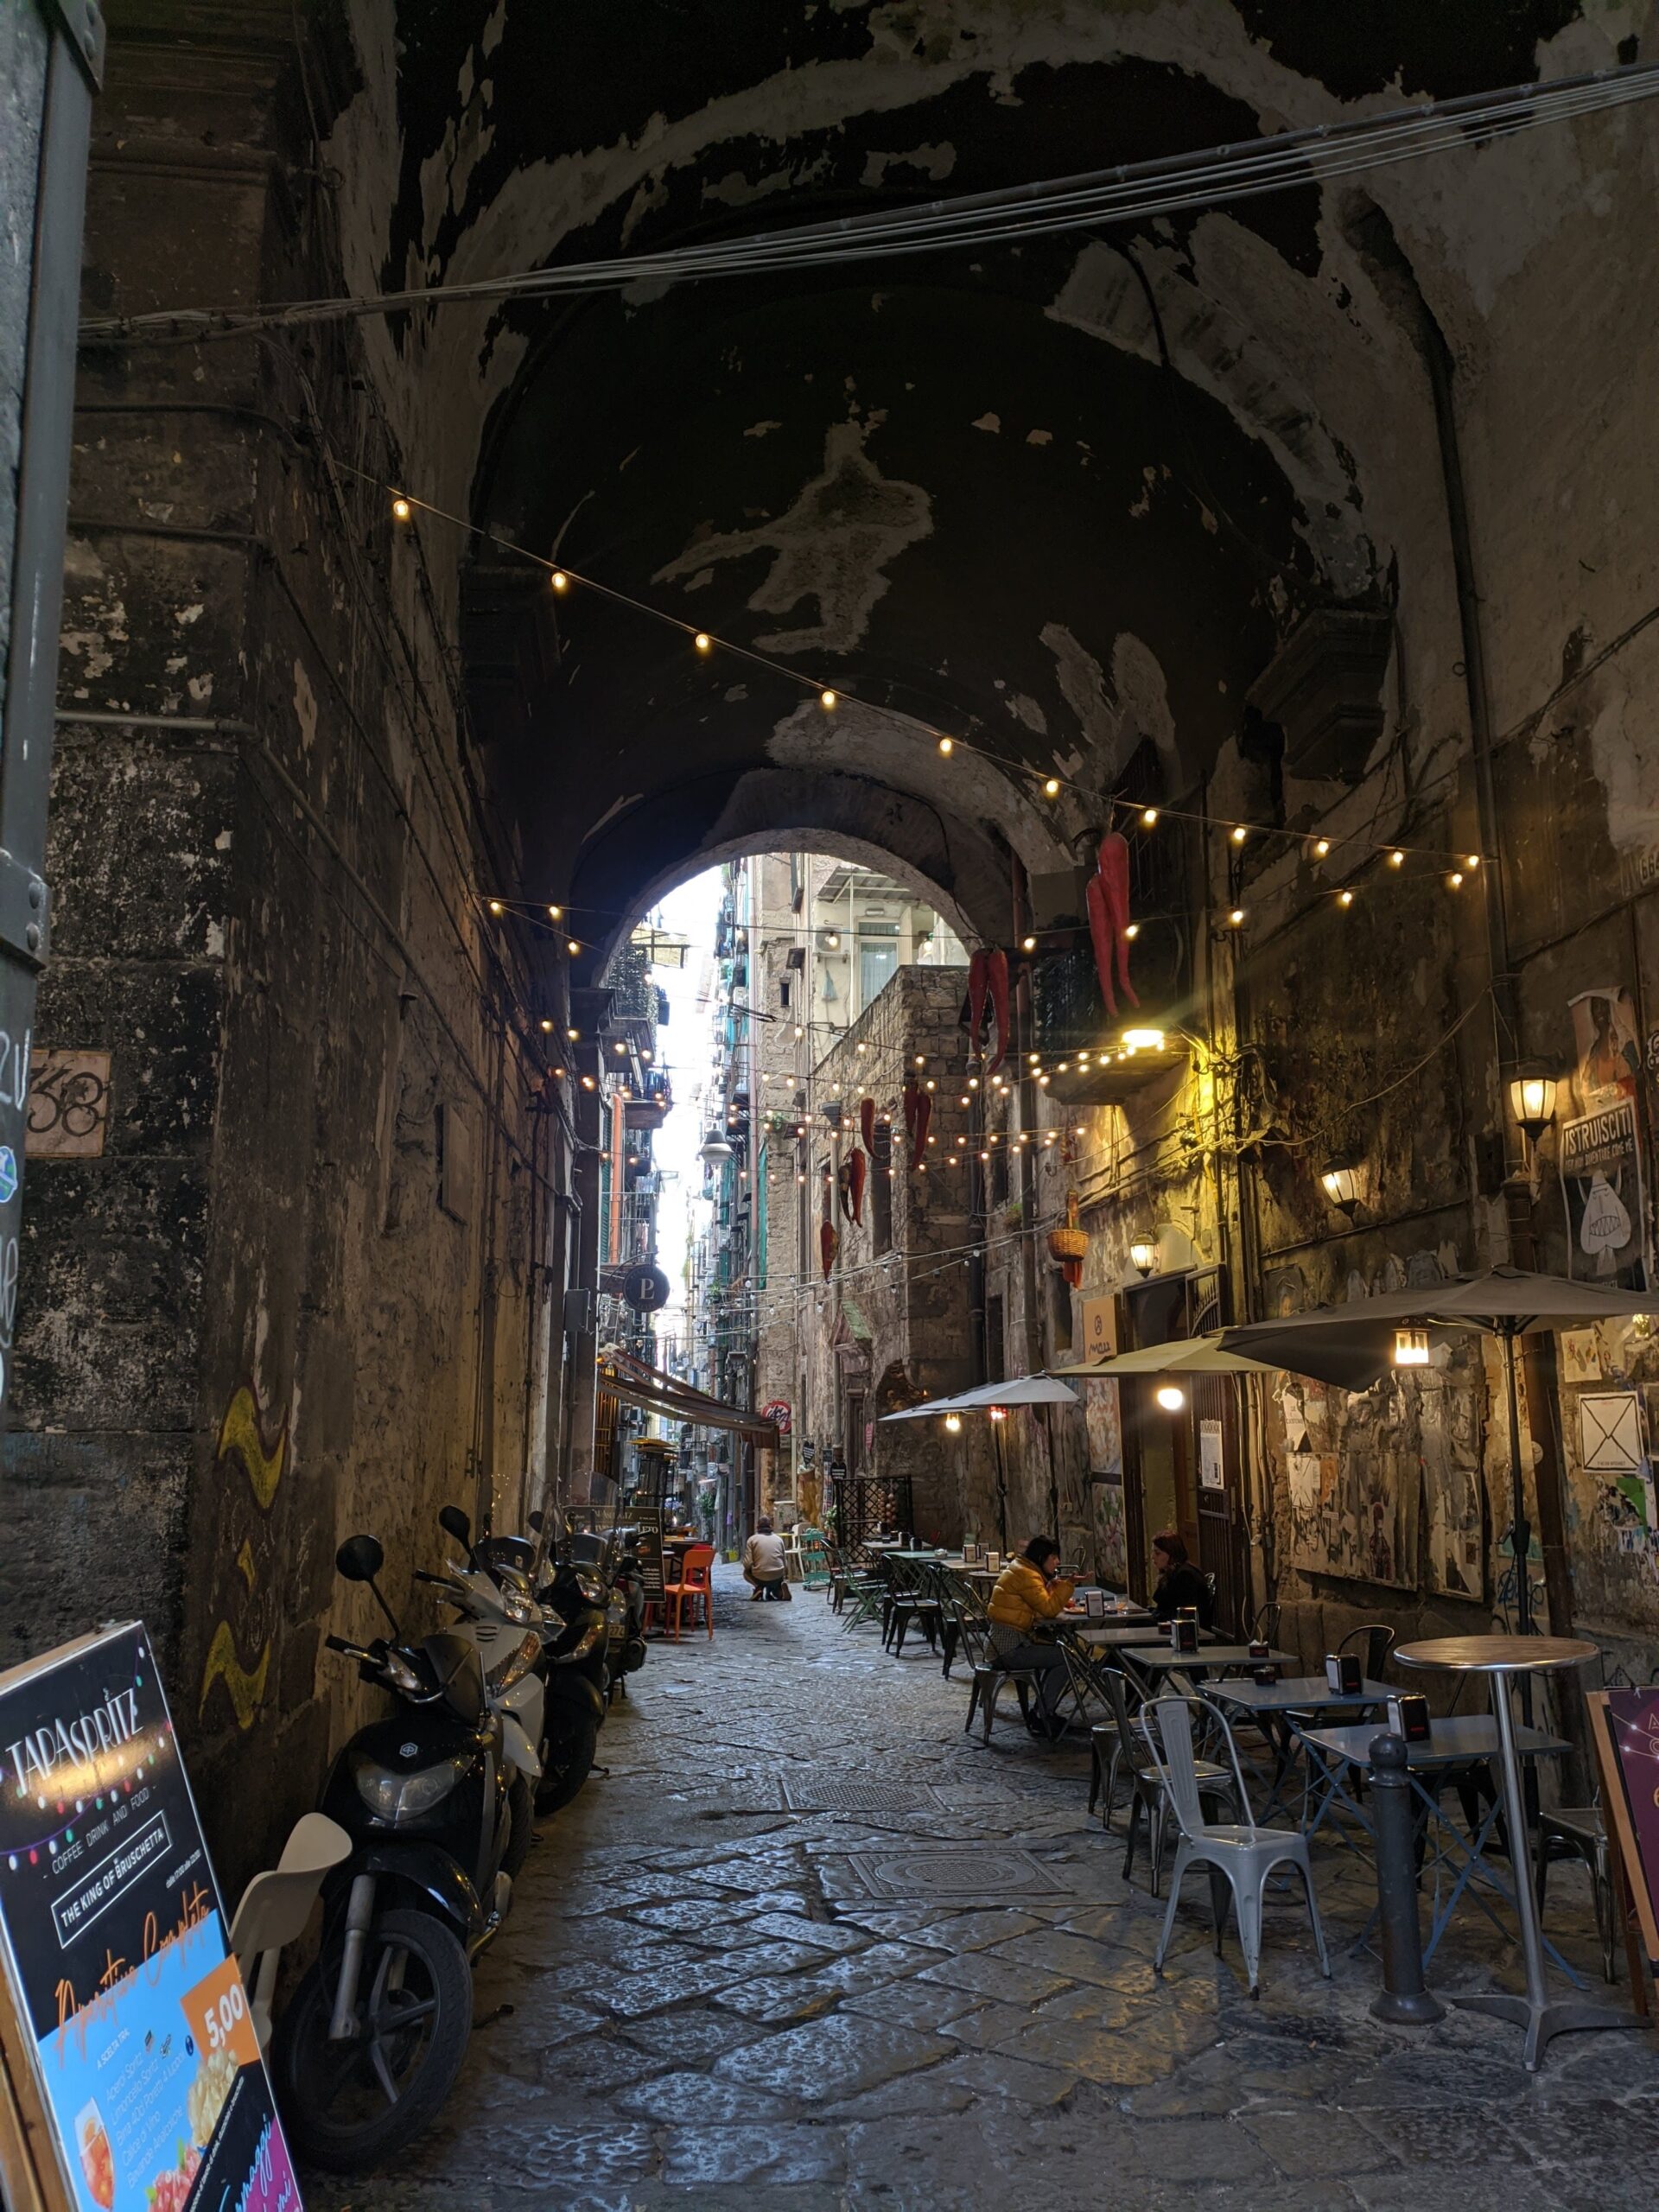 Foto de uma galeria formada por um arco em Nápoles, nela é possível ver um varal de luzes, mesas de um restaurante e várias motos encostadas em sua parede.